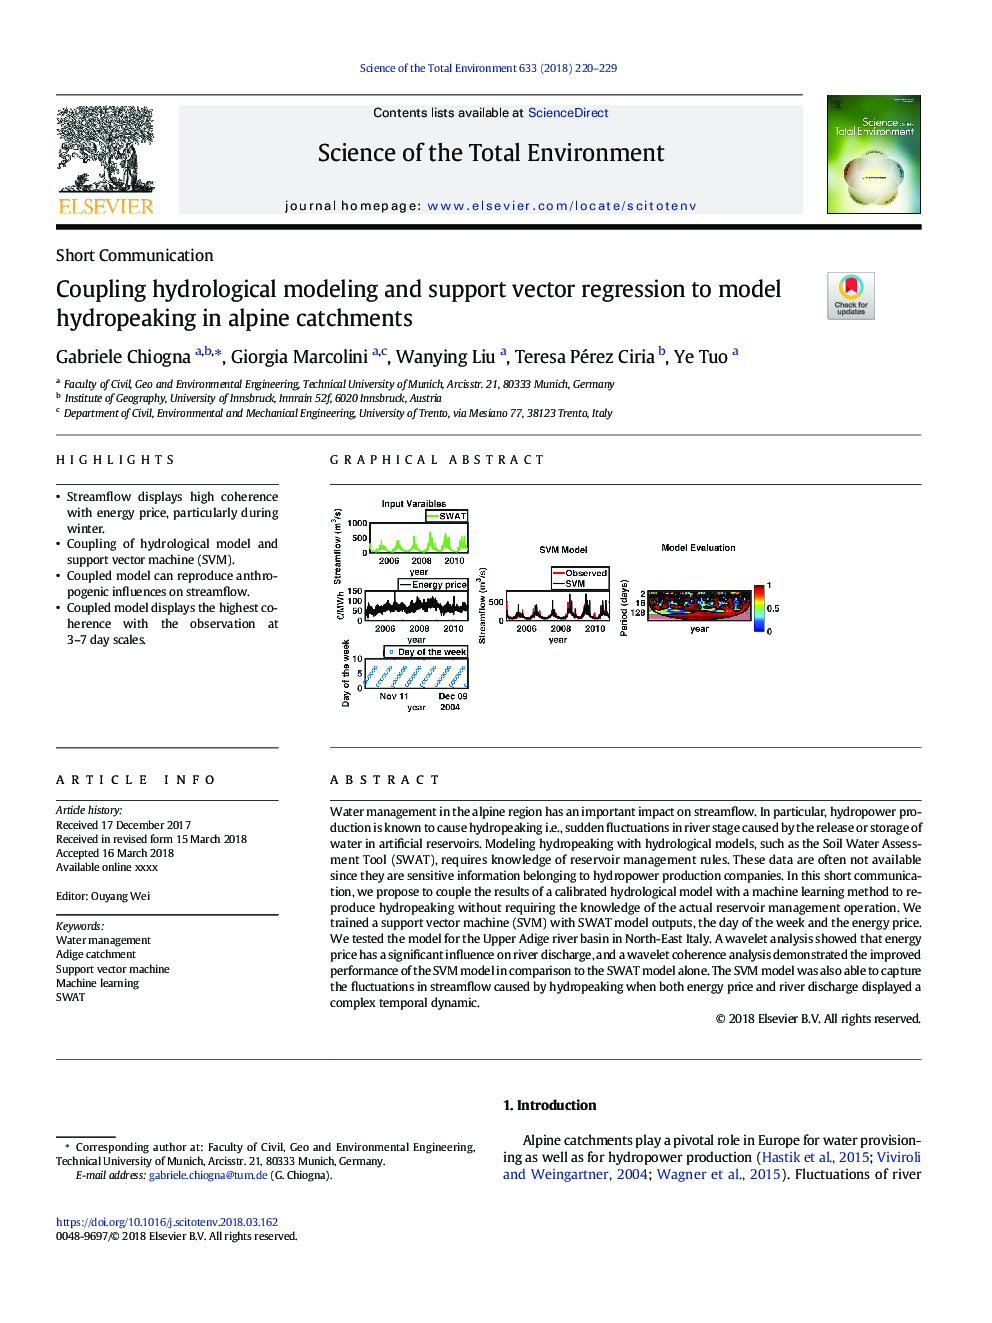 مدلسازی هیدرولوژیکی کوپلینگ و رگرسیون بردار حمایتی به منظور مدل سازی هیدروپیک در حوضه های آلپ 